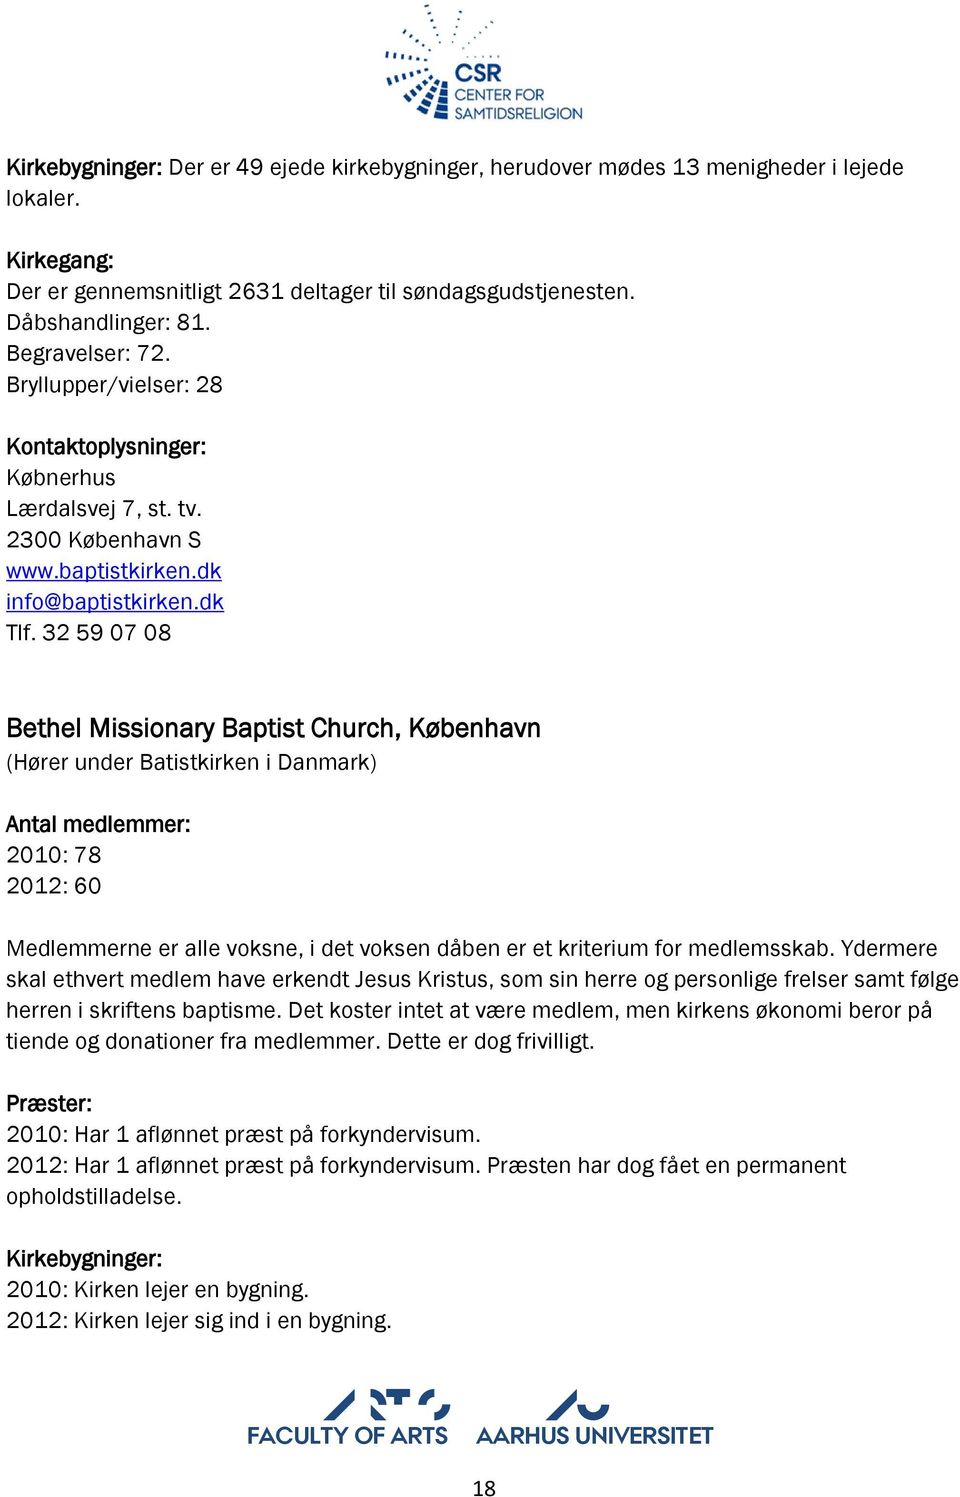 32 59 07 08 Bethel Missionary Baptist Church, København (Hører under Batistkirken i Danmark) Antal medlemmer: 2010: 78 2012: 60 Medlemmerne er alle voksne, i det voksen dåben er et kriterium for